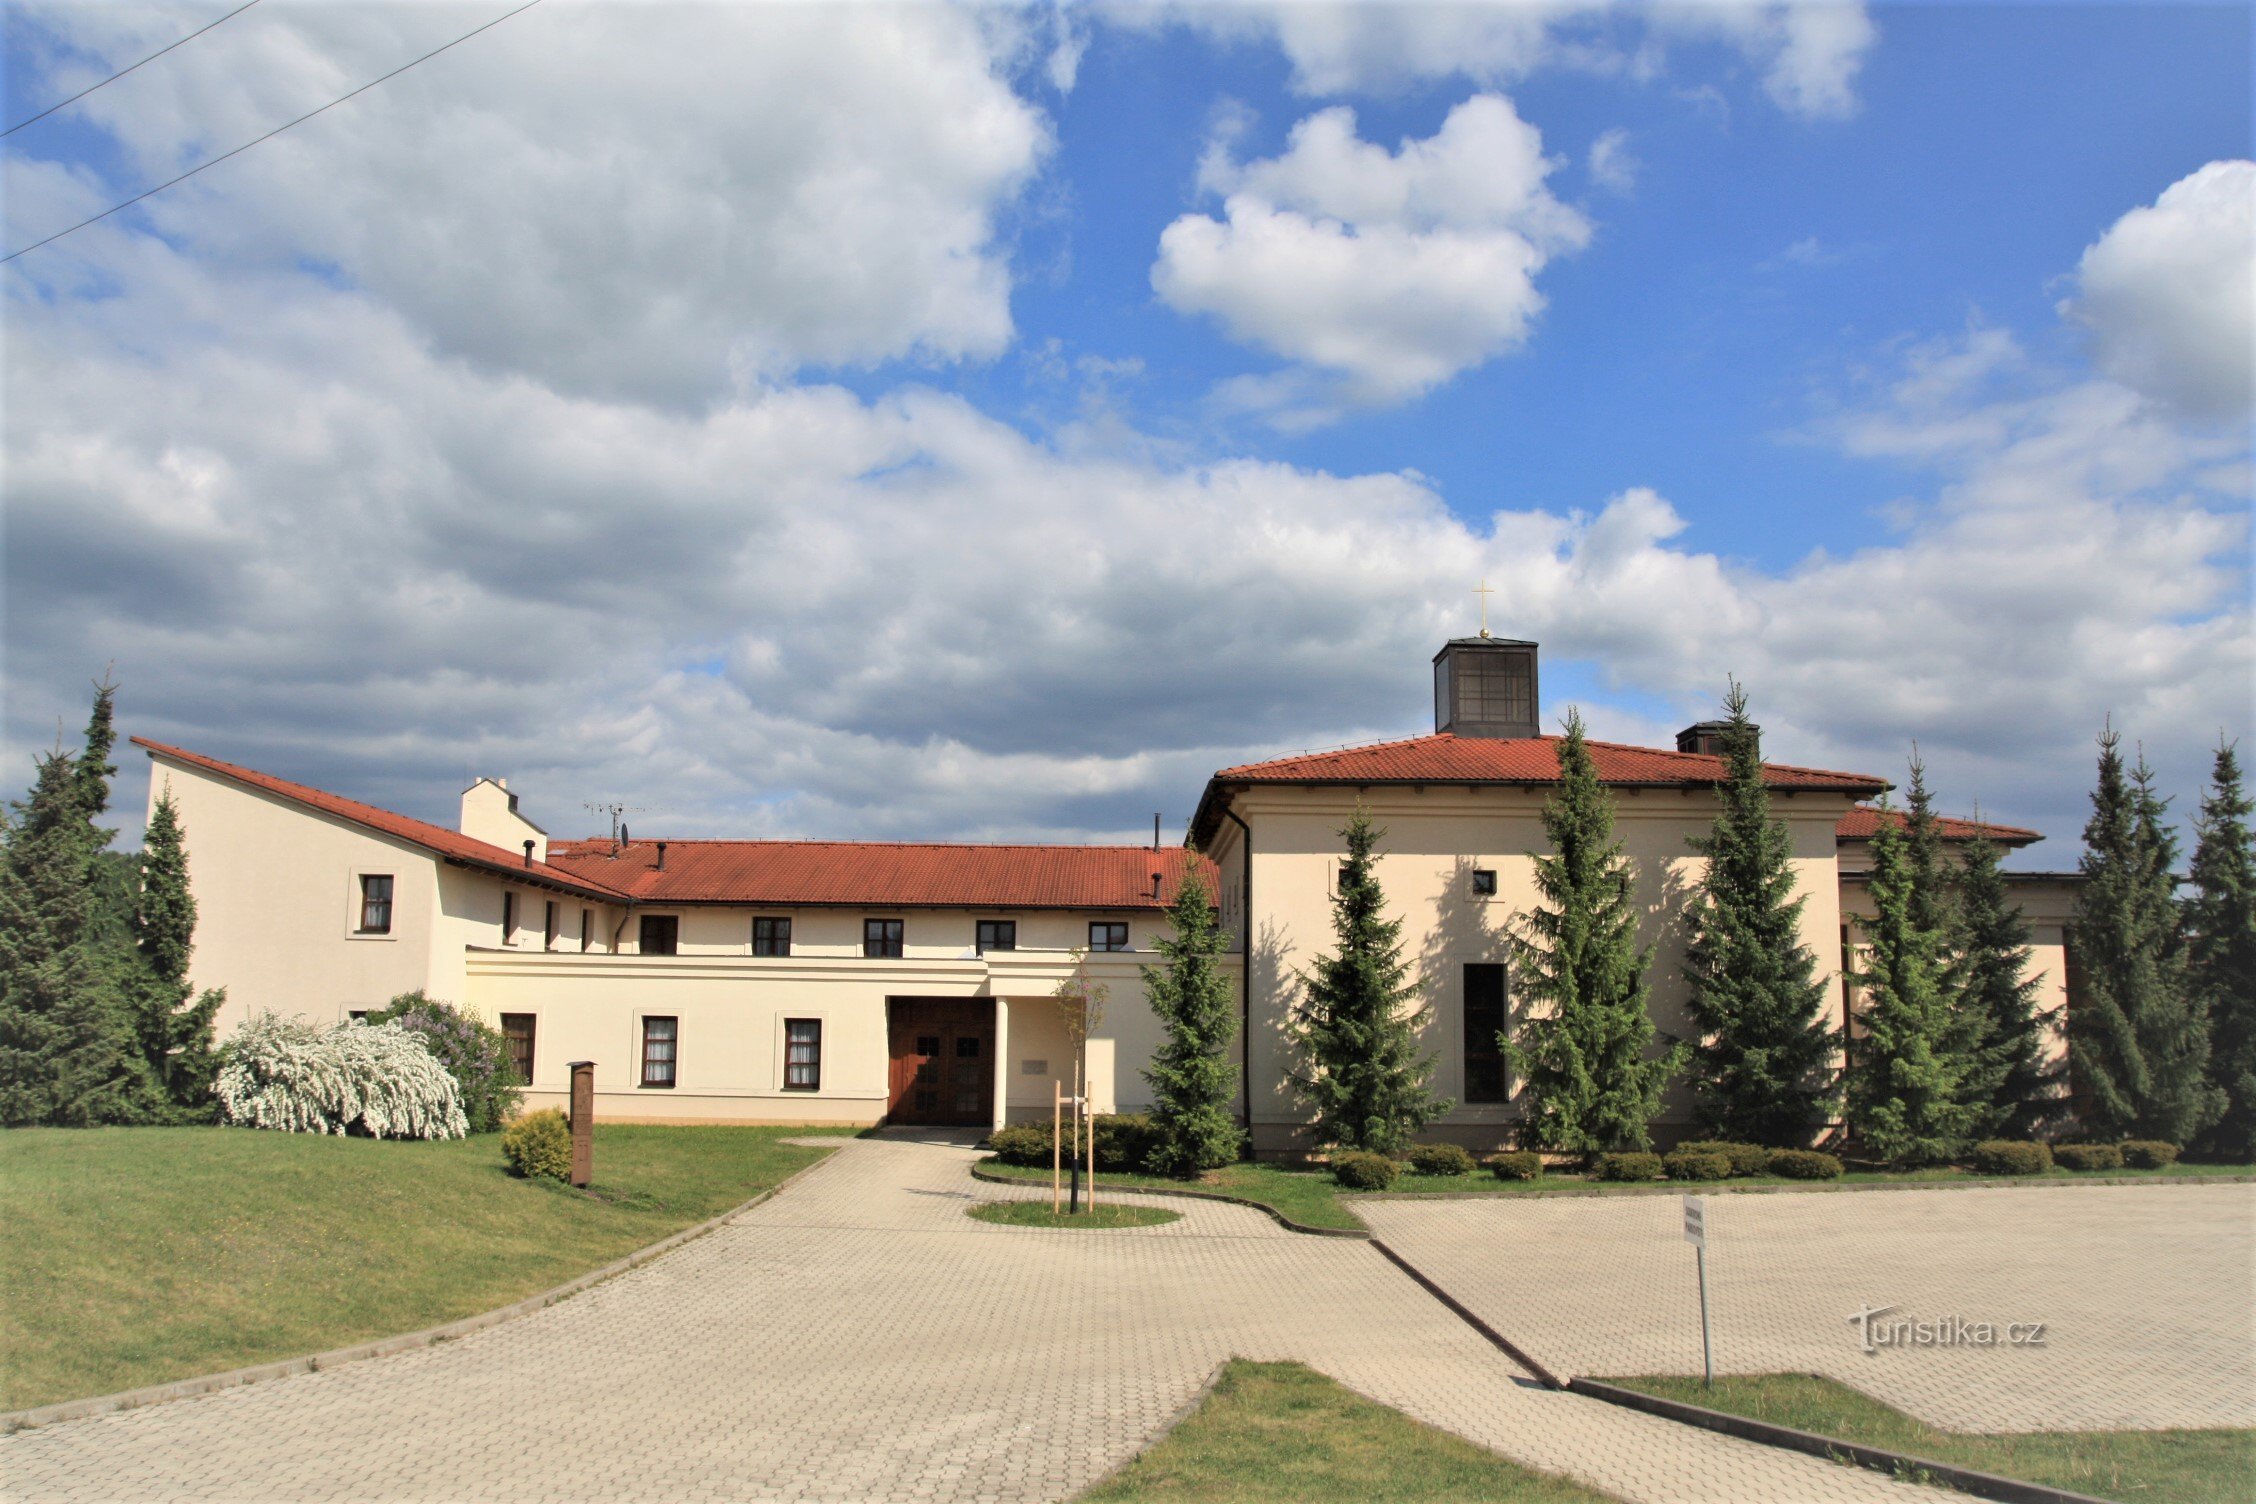 Trasa zaczyna się w Soběšicach w pobliżu klasztoru Klarisek